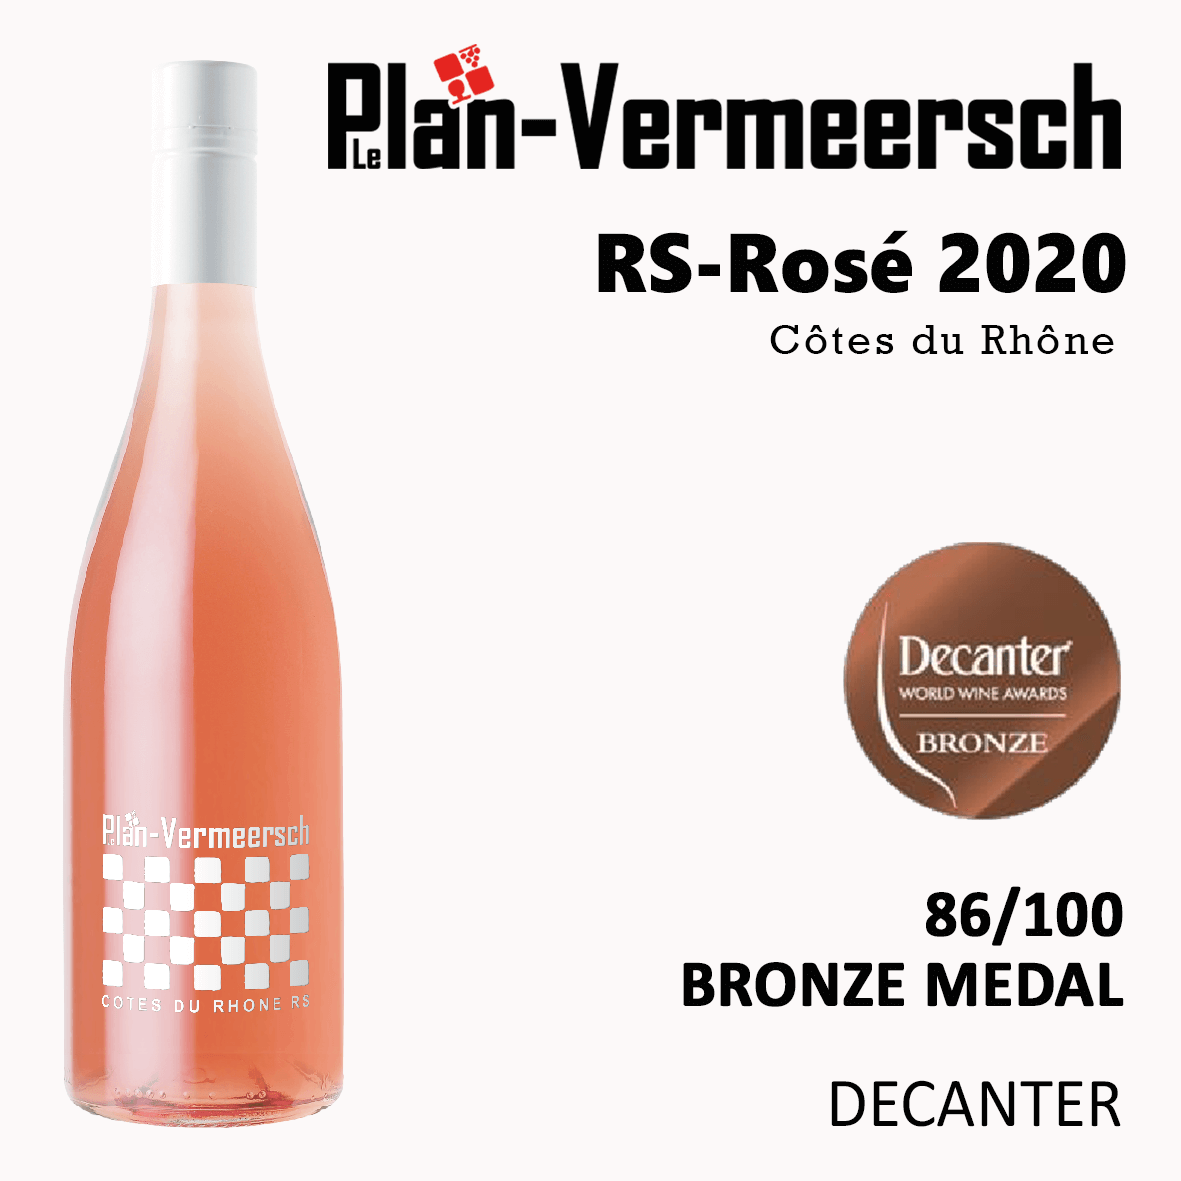 Bouteille de vin Cotes du Rhone RS-Rhone Rose Décanter médaille de bronze Leplan- -Vermeersch